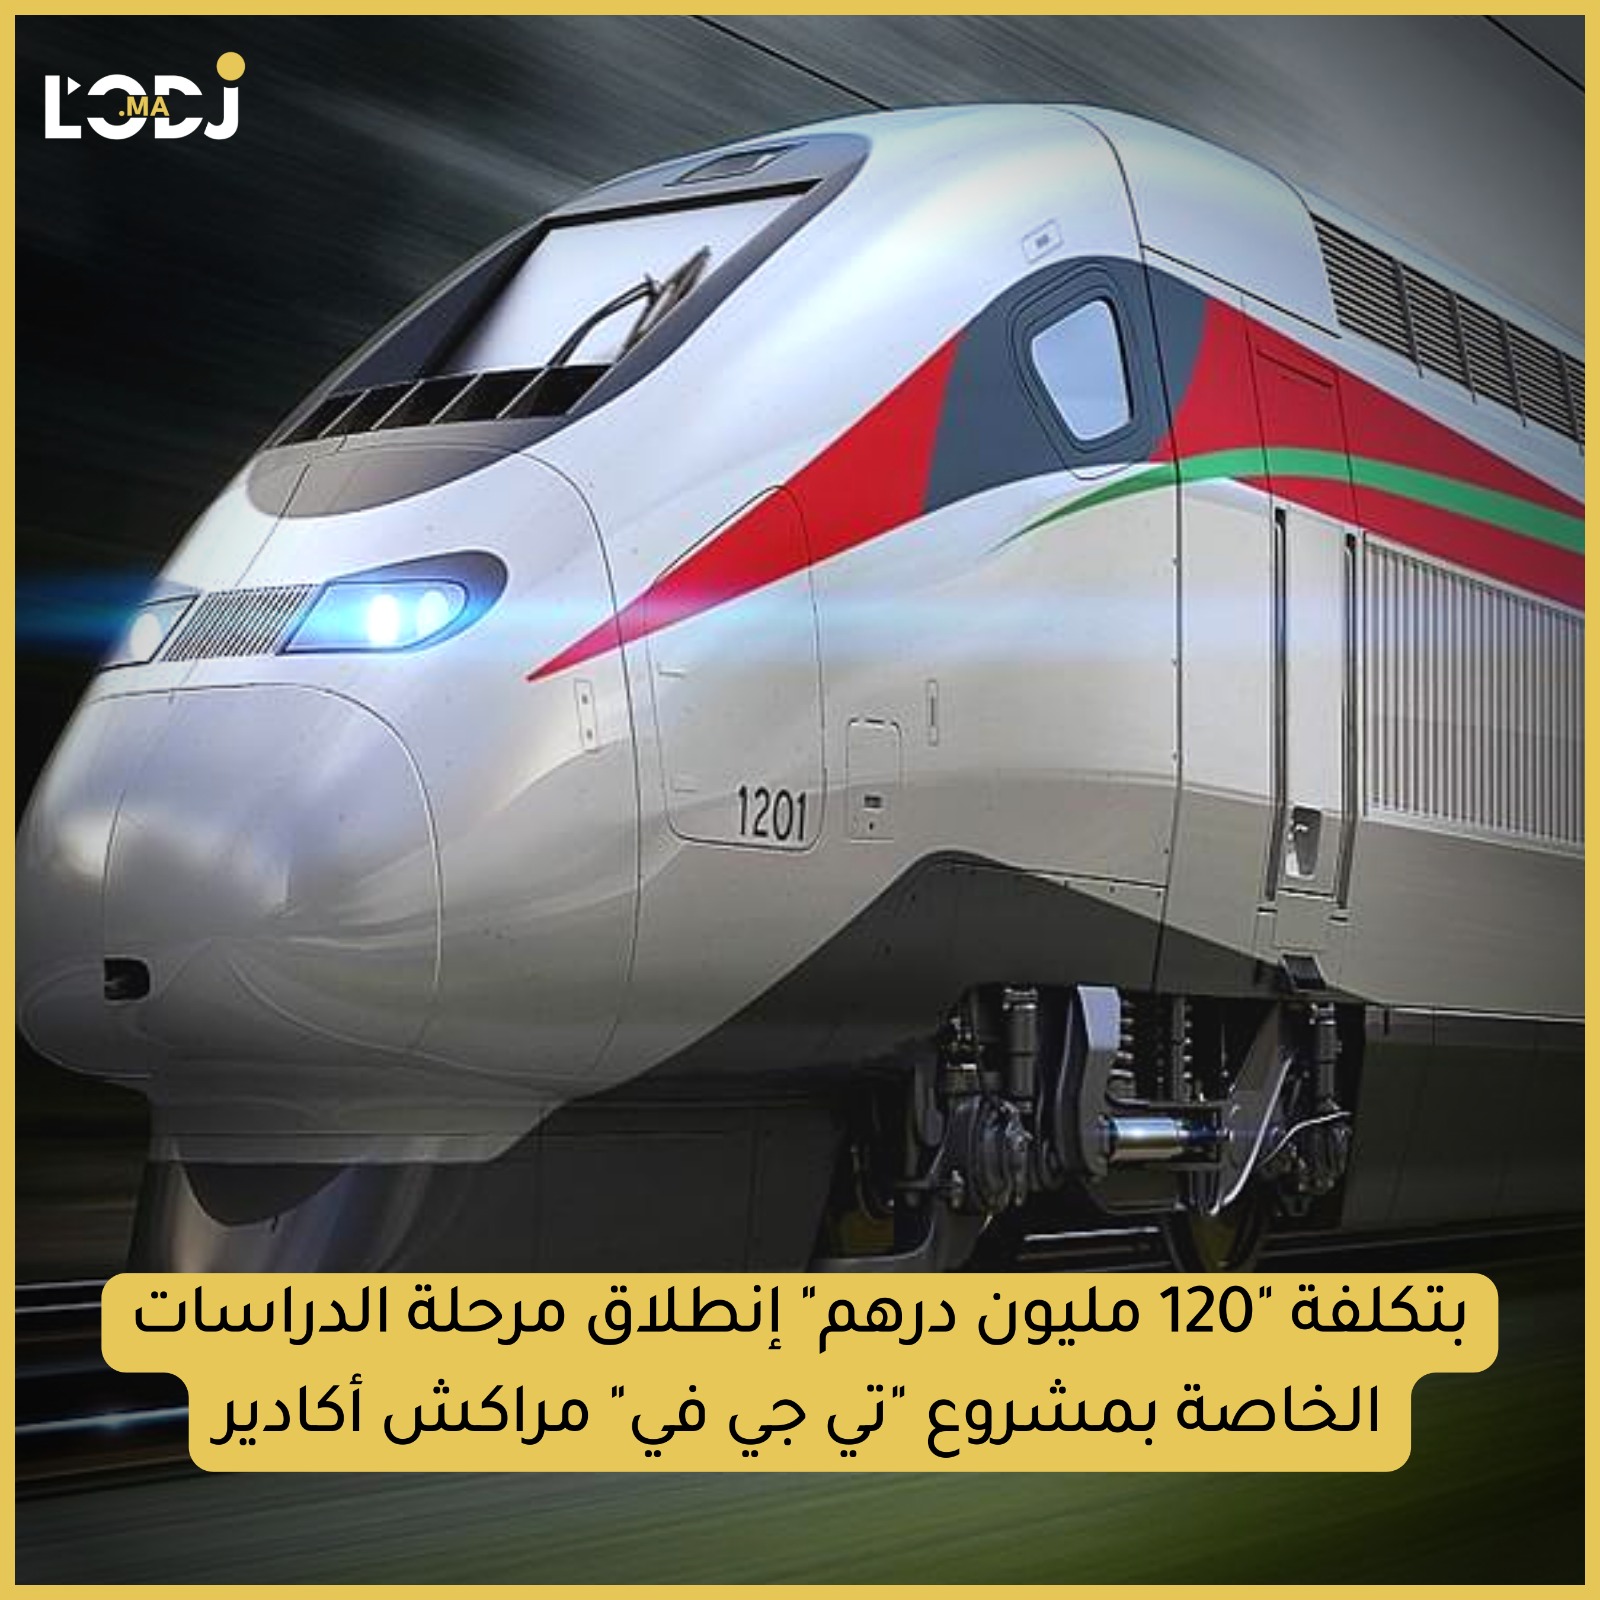  المكتب الوطني للسكك الحديدية يخصص 120 مليون درهم لإنجاز دراسات أولية تمهيدية تخص  الربط بين مراكش وأكادير